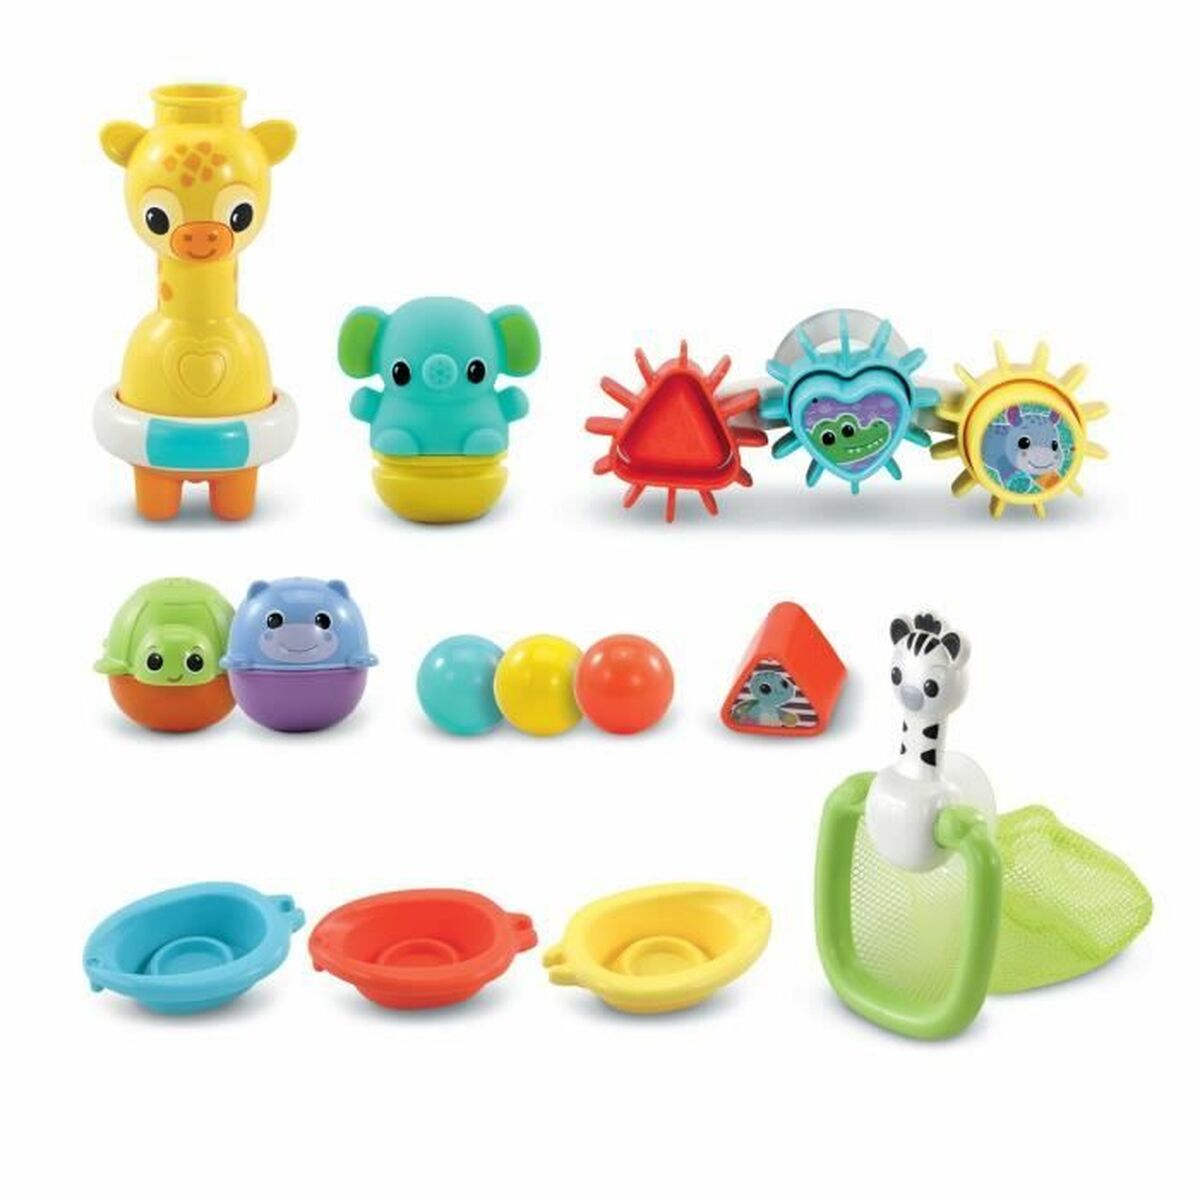 Bath Toys Vtech Baby Coffret De Bain Multi-Activité (FR) - Little Baby Shop